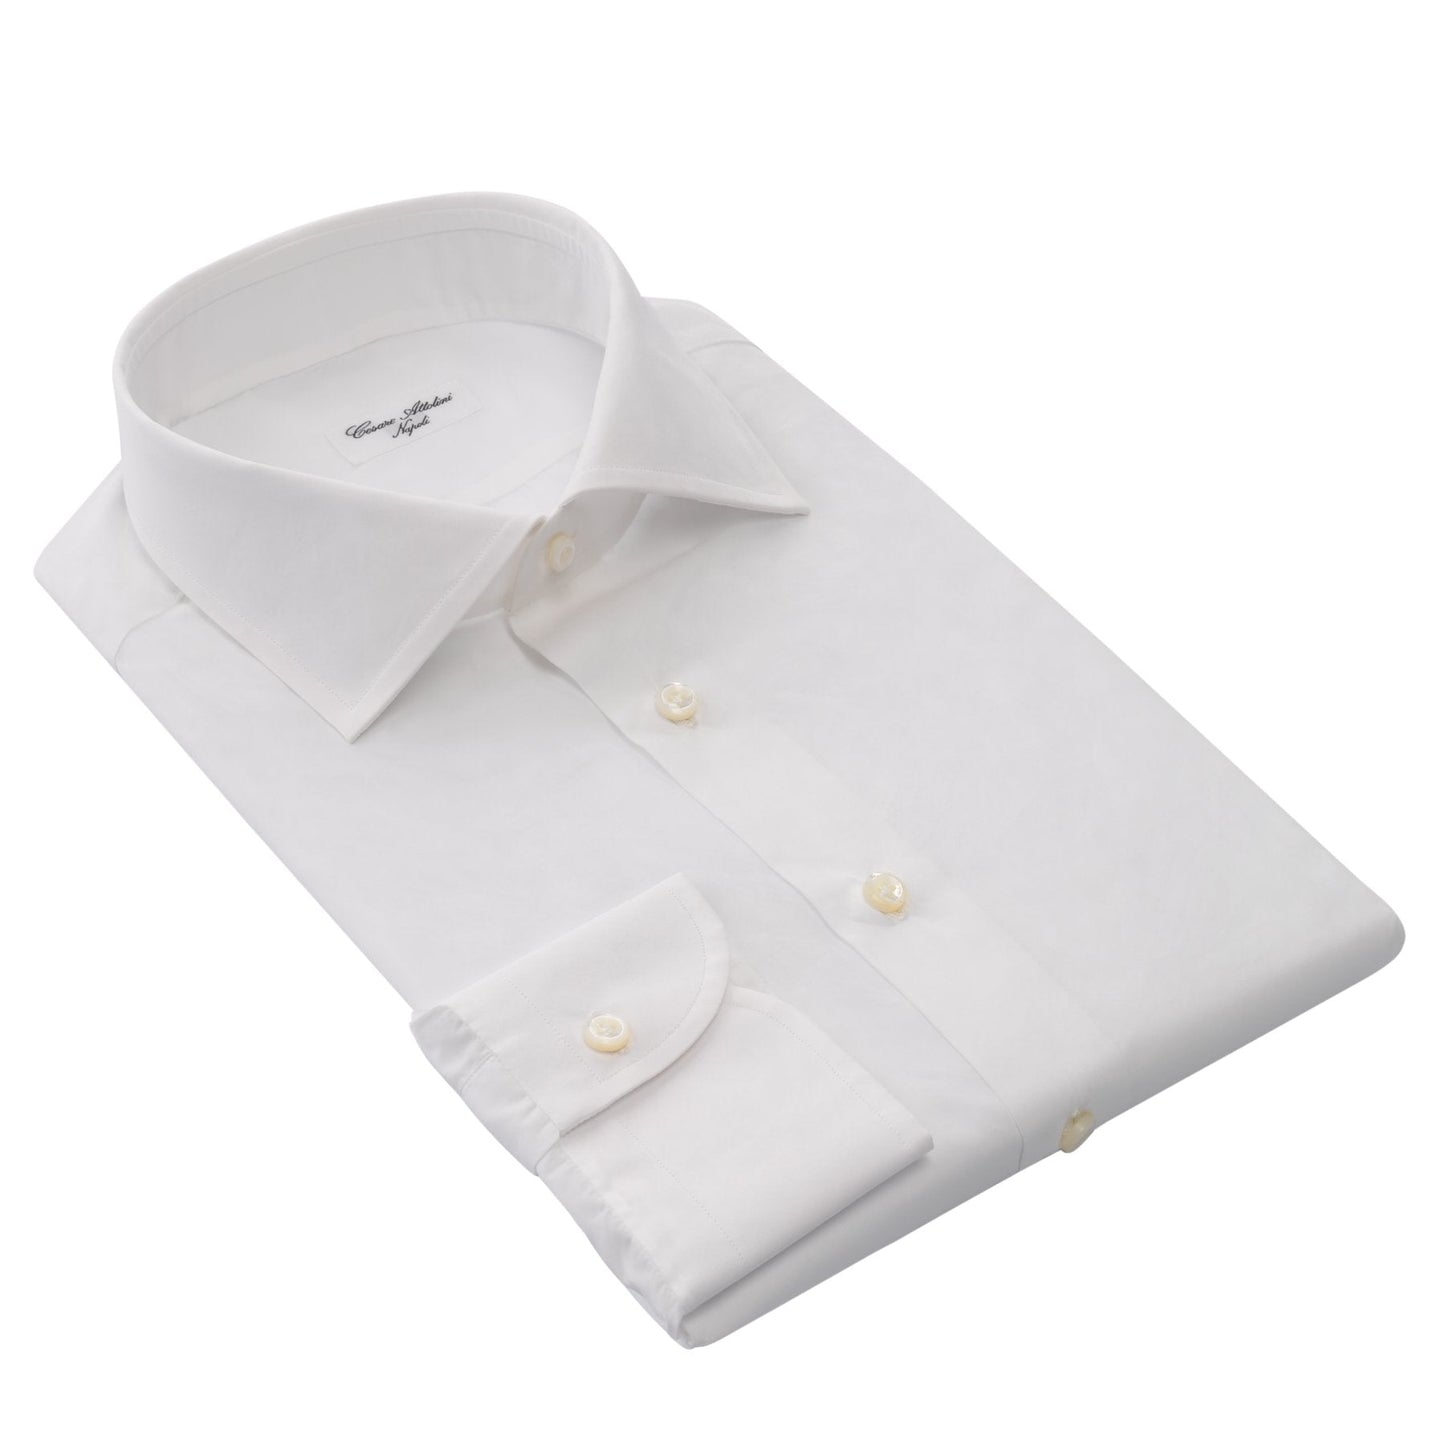 Cesare Attolini Cotton Dress Shirt in White - SARTALE